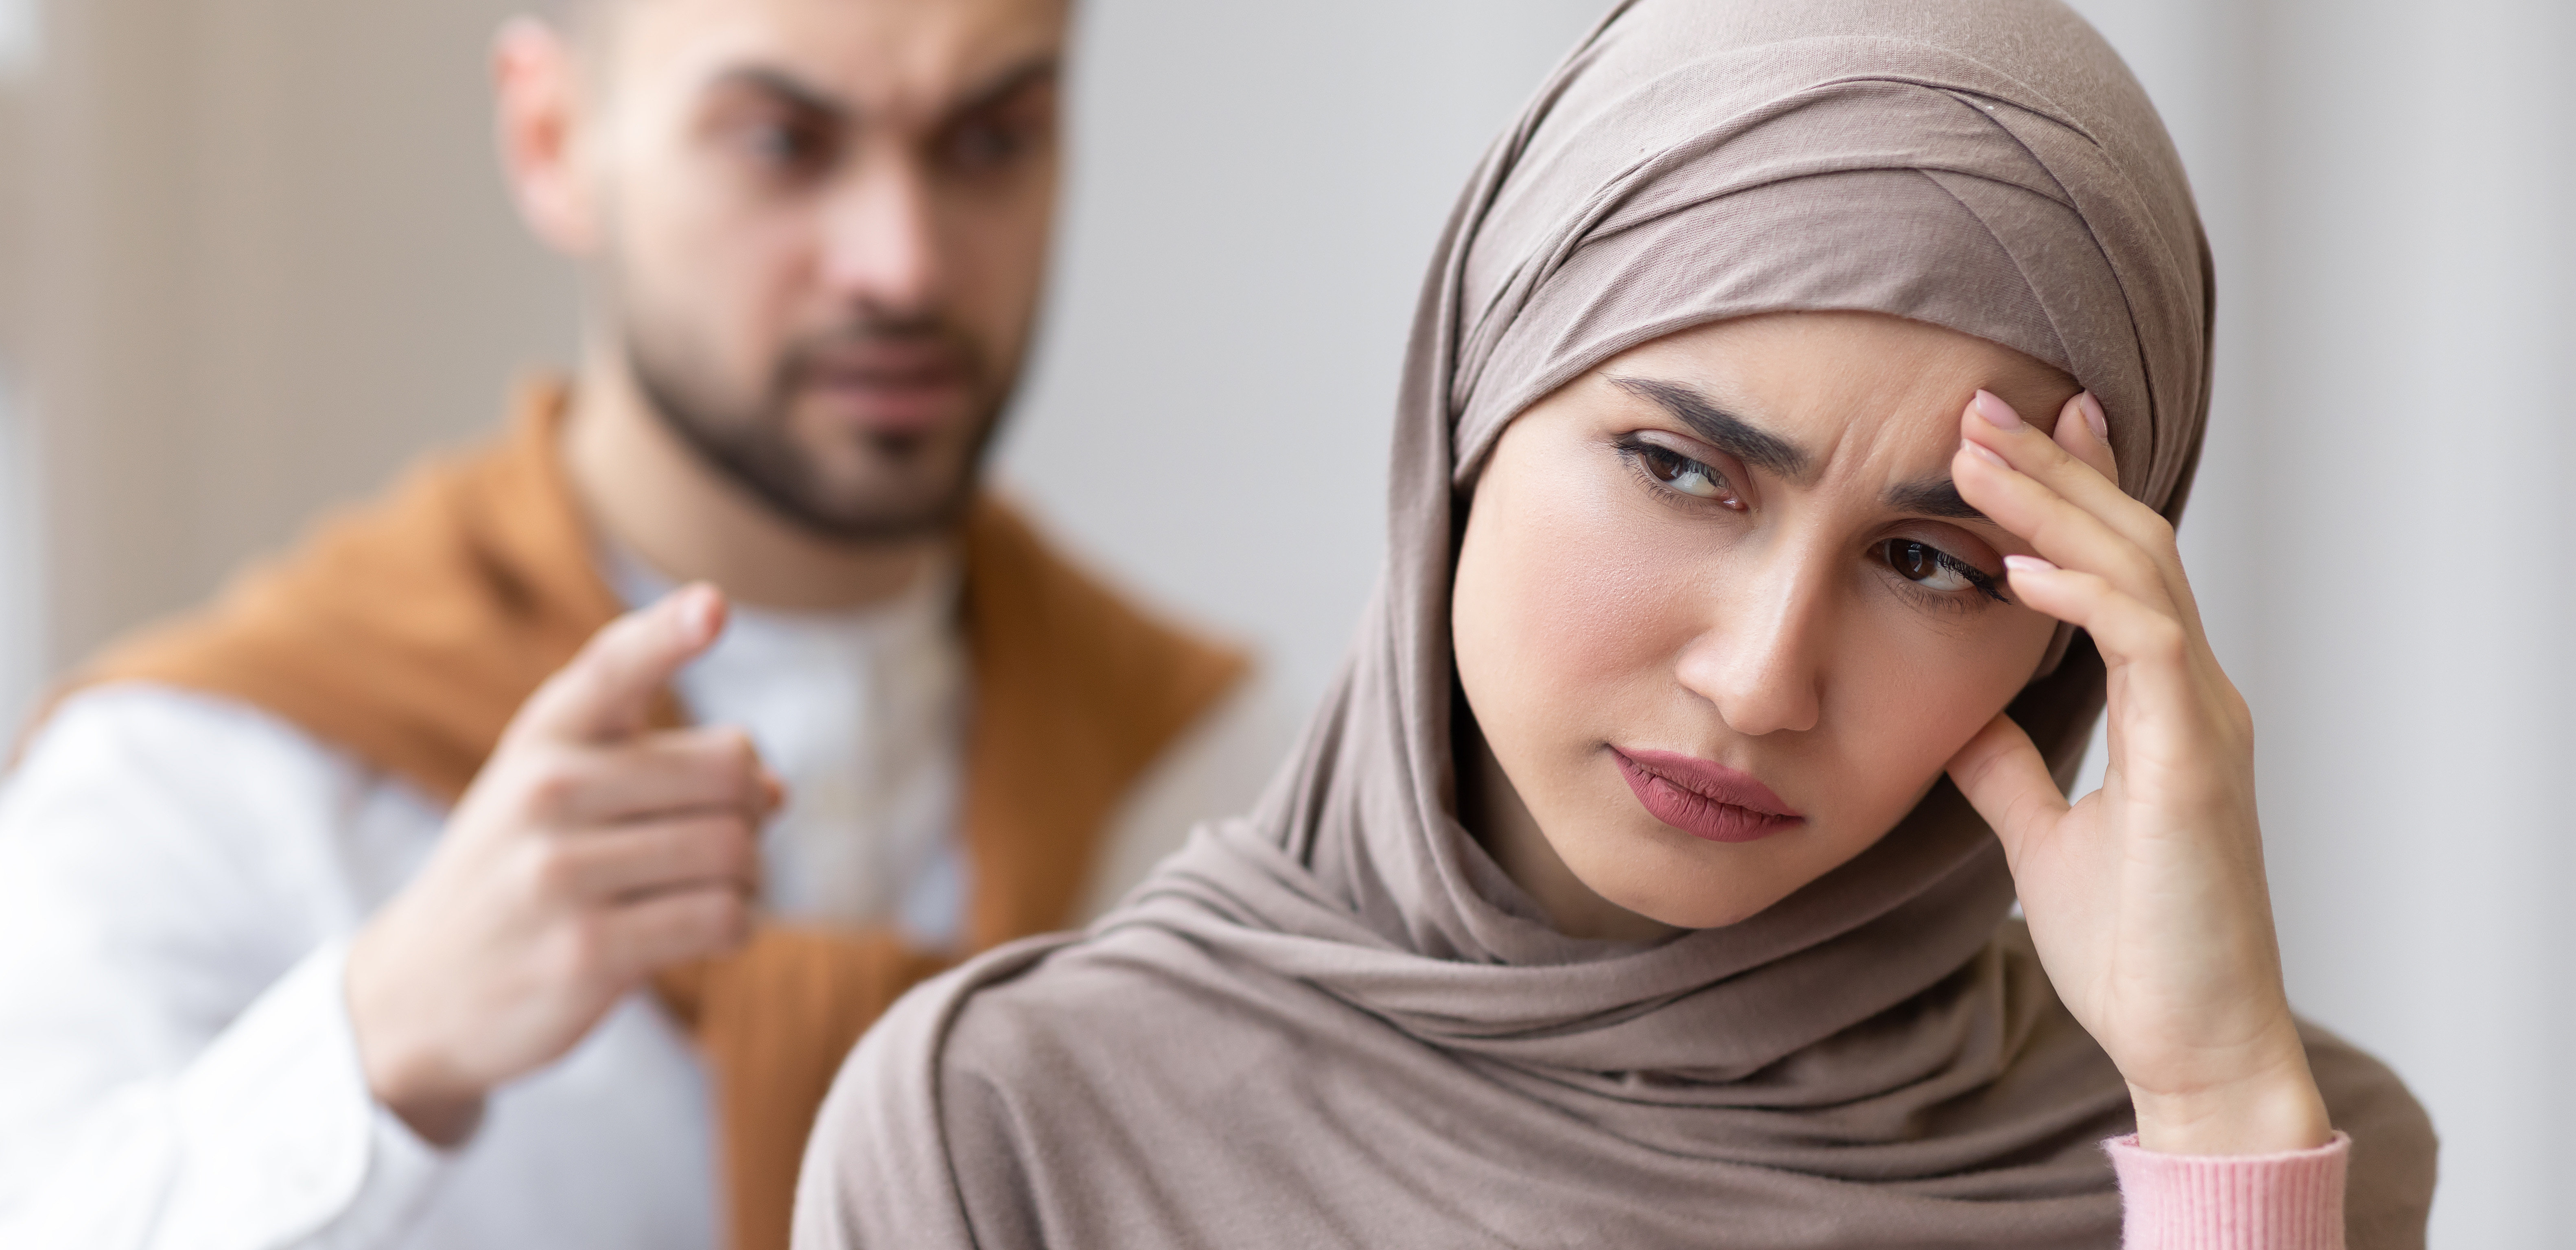 زوجي يهددني بالطلاق كلما غضب فماذا أفعل؟